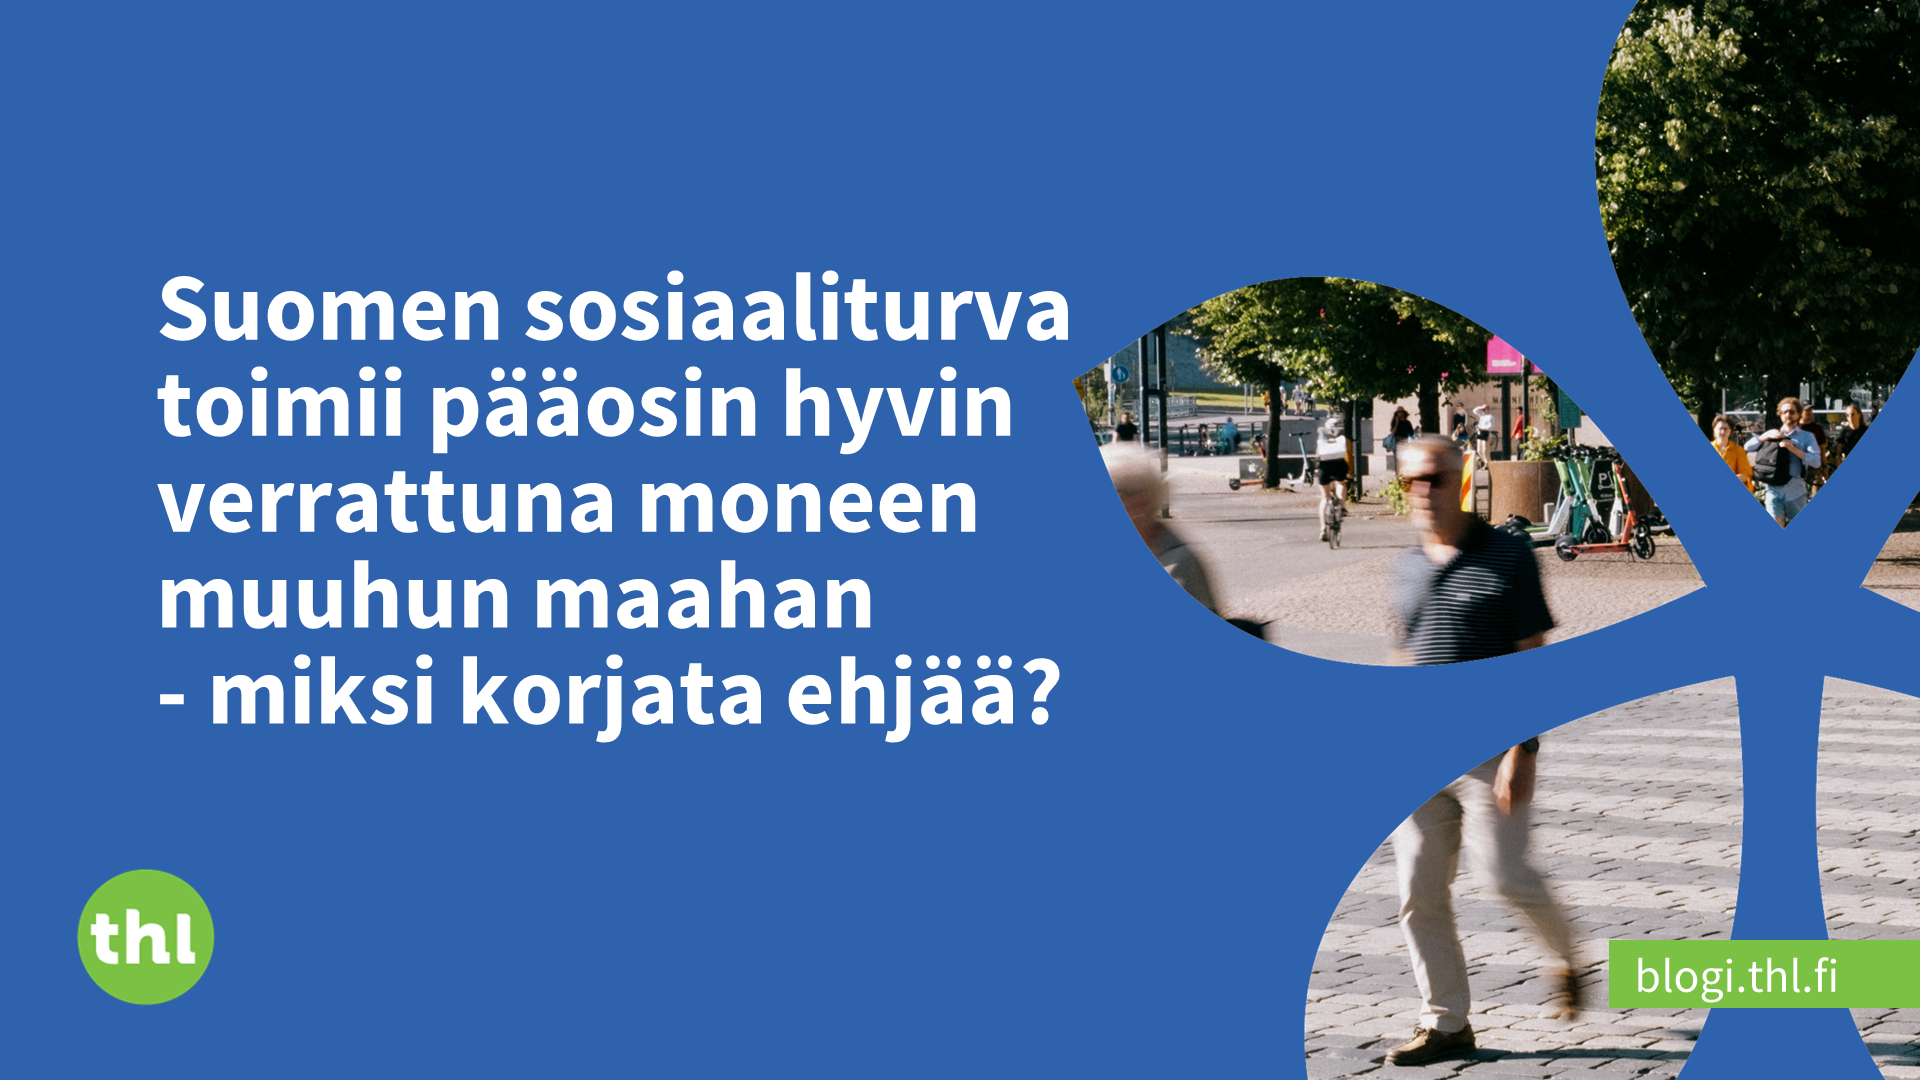 Suomen sosiaaliturva toimii pääosin hyvin verrattuna moneen muuhun maahan -  miksi korjata ehjää? - THL-blogi